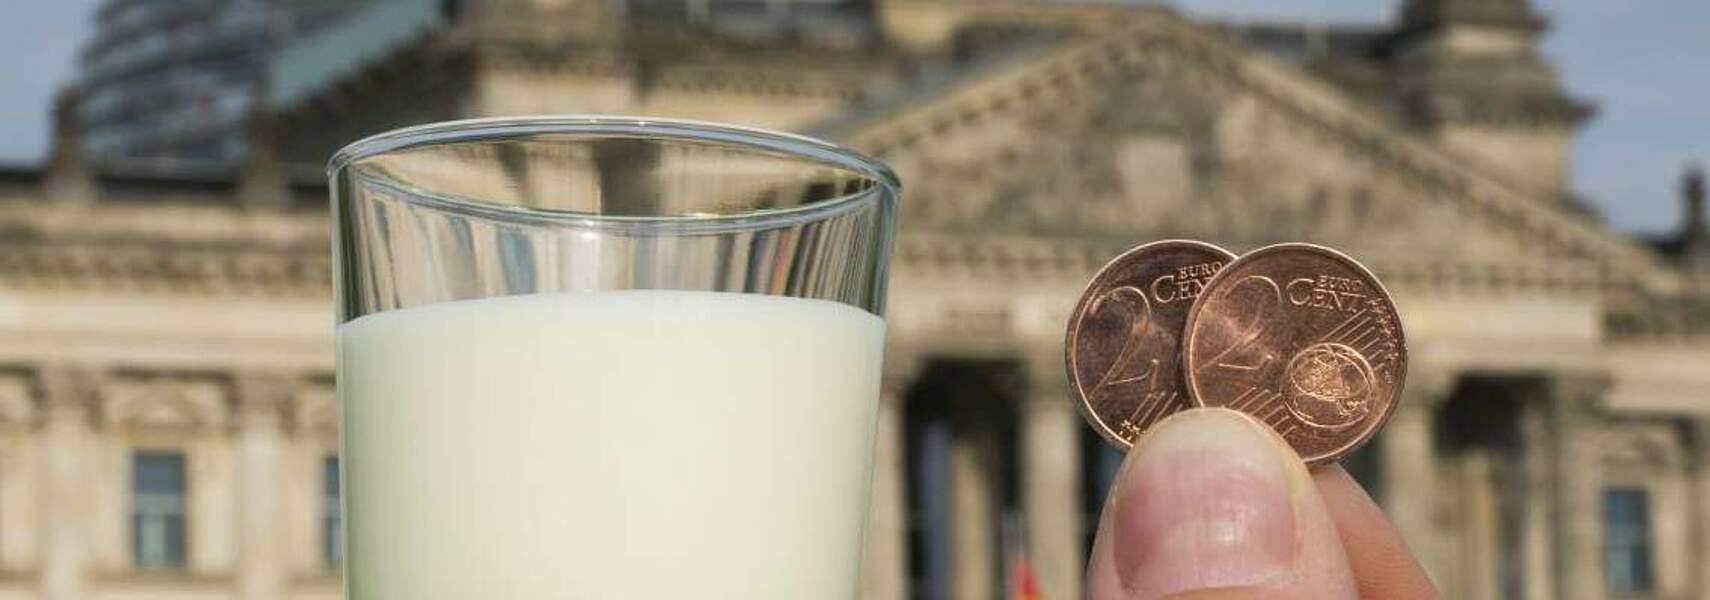 Bamberger Erklärung zum Milchquotenausstieg